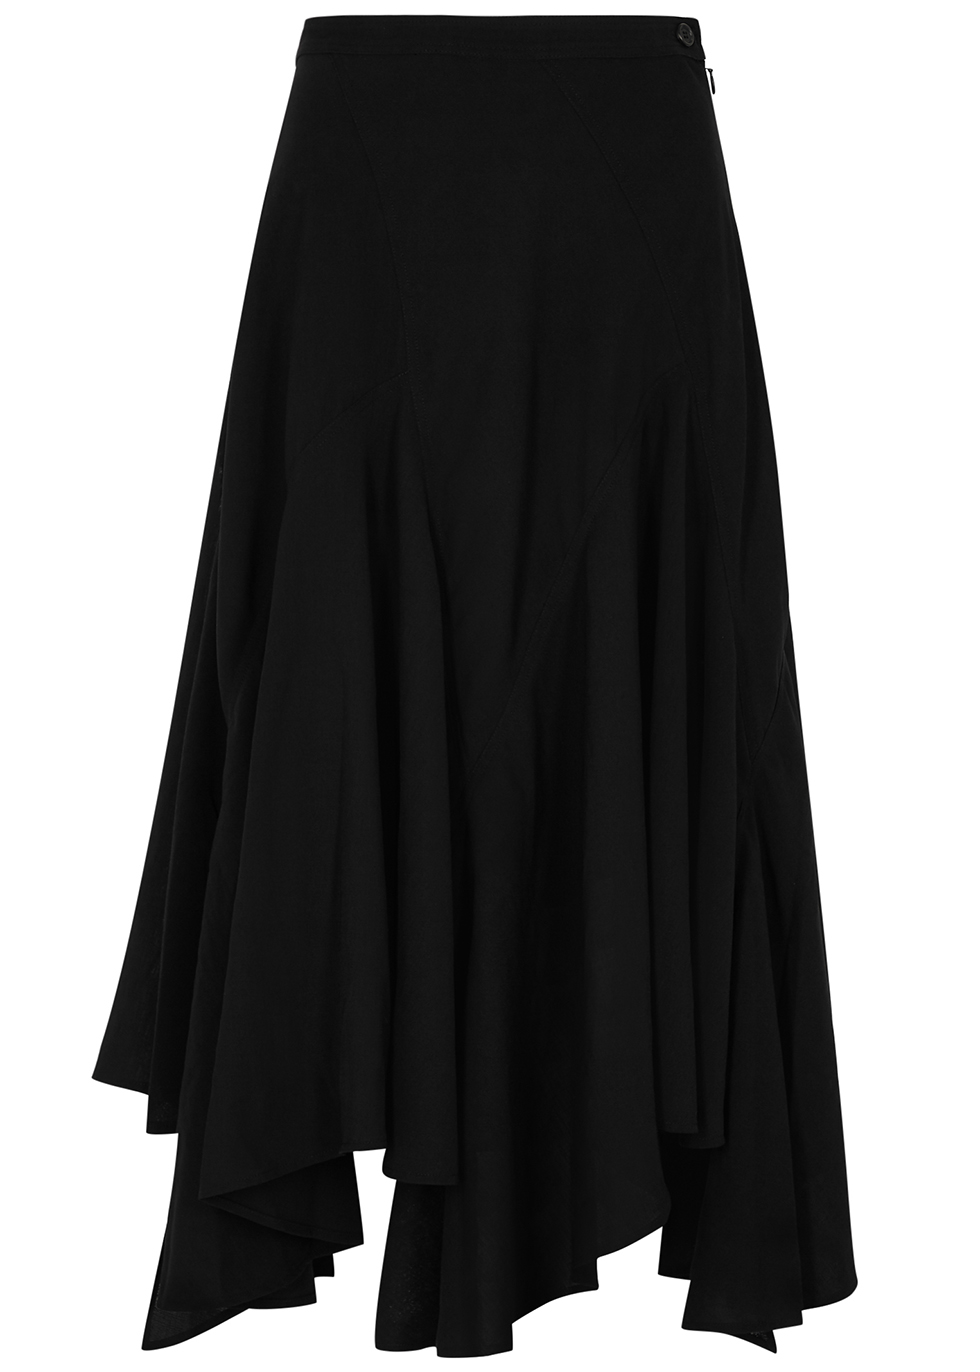 Black flared skirt